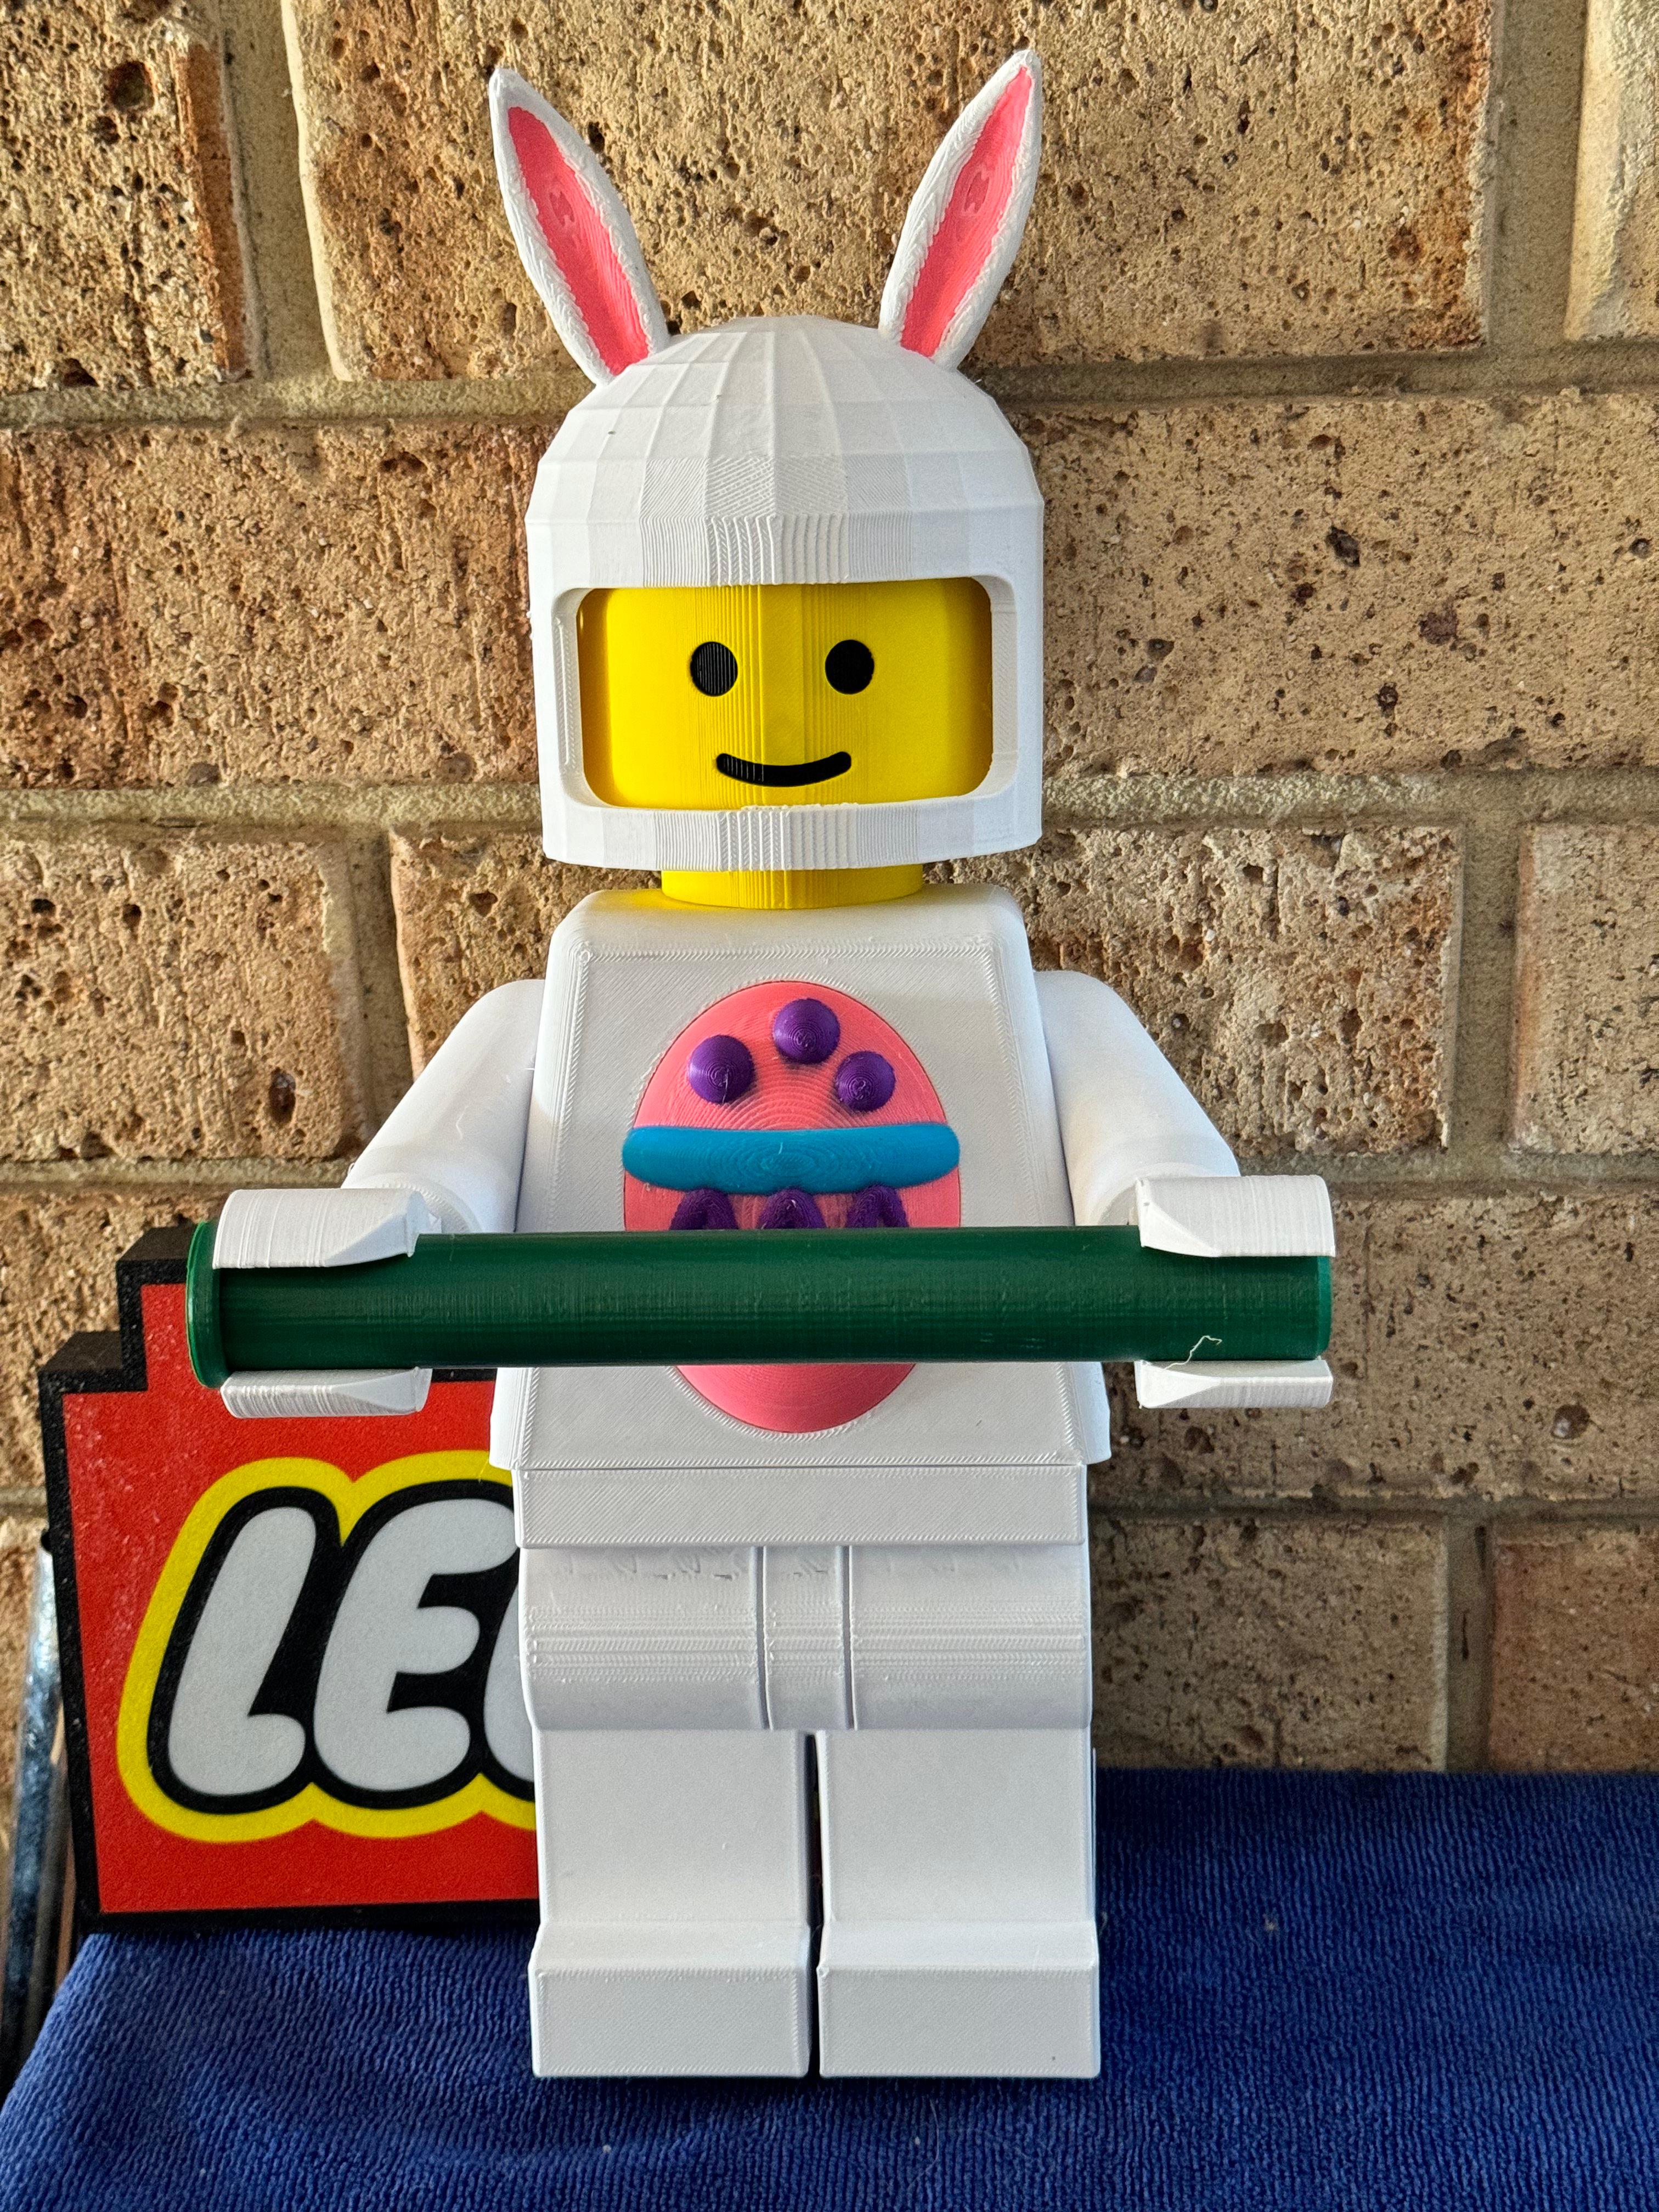 Easter Rabbit Lego Man Toilet Roll / towel holder 3d model